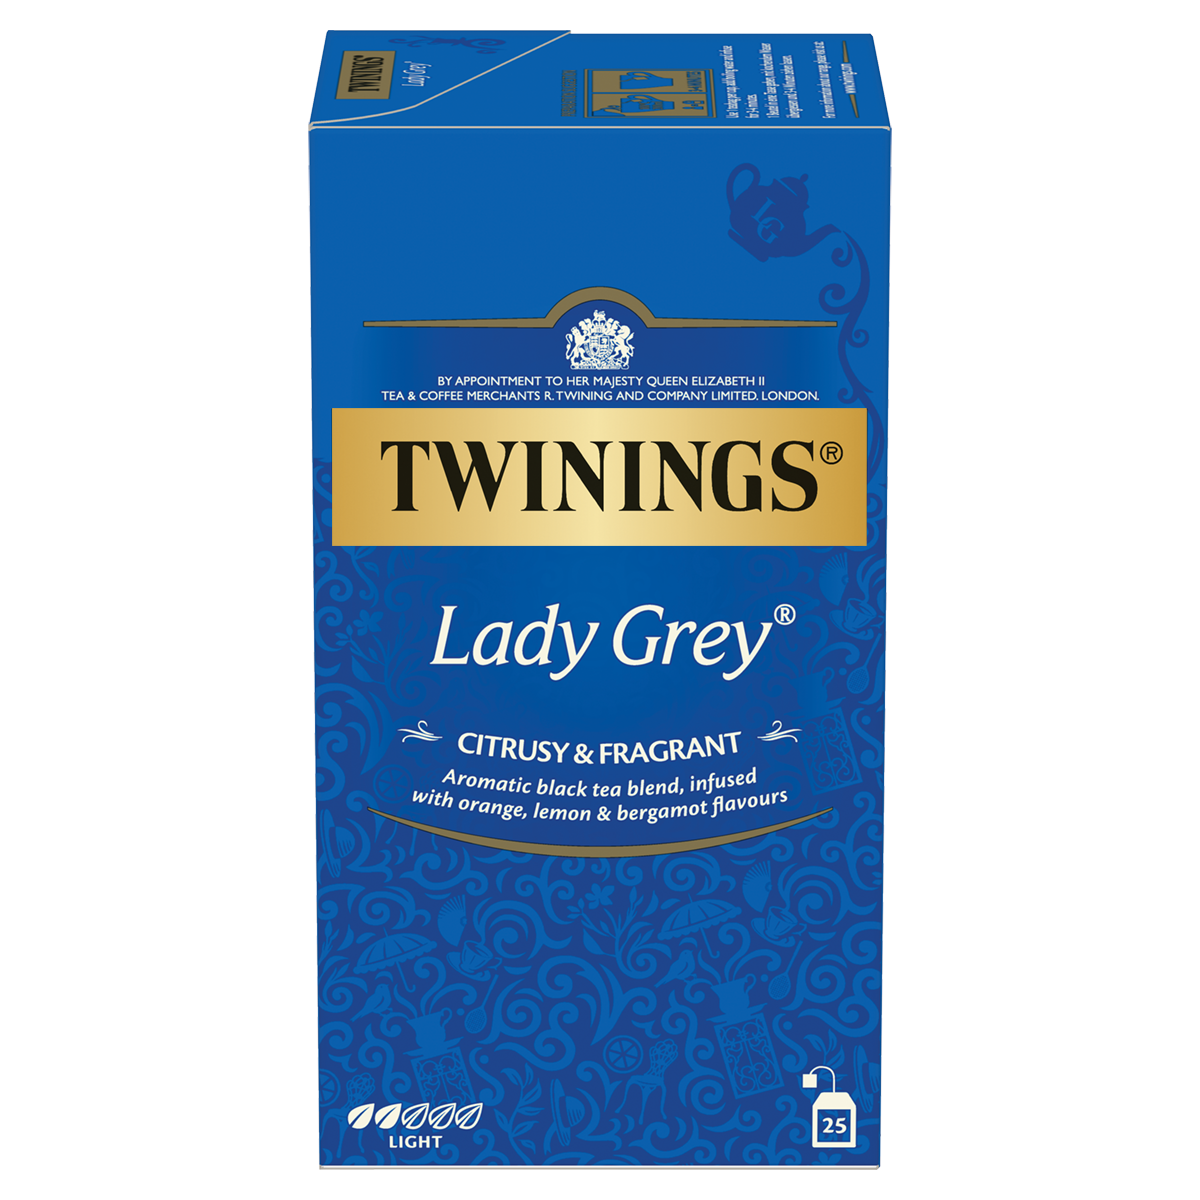  Lady Grey: le thé noir riche